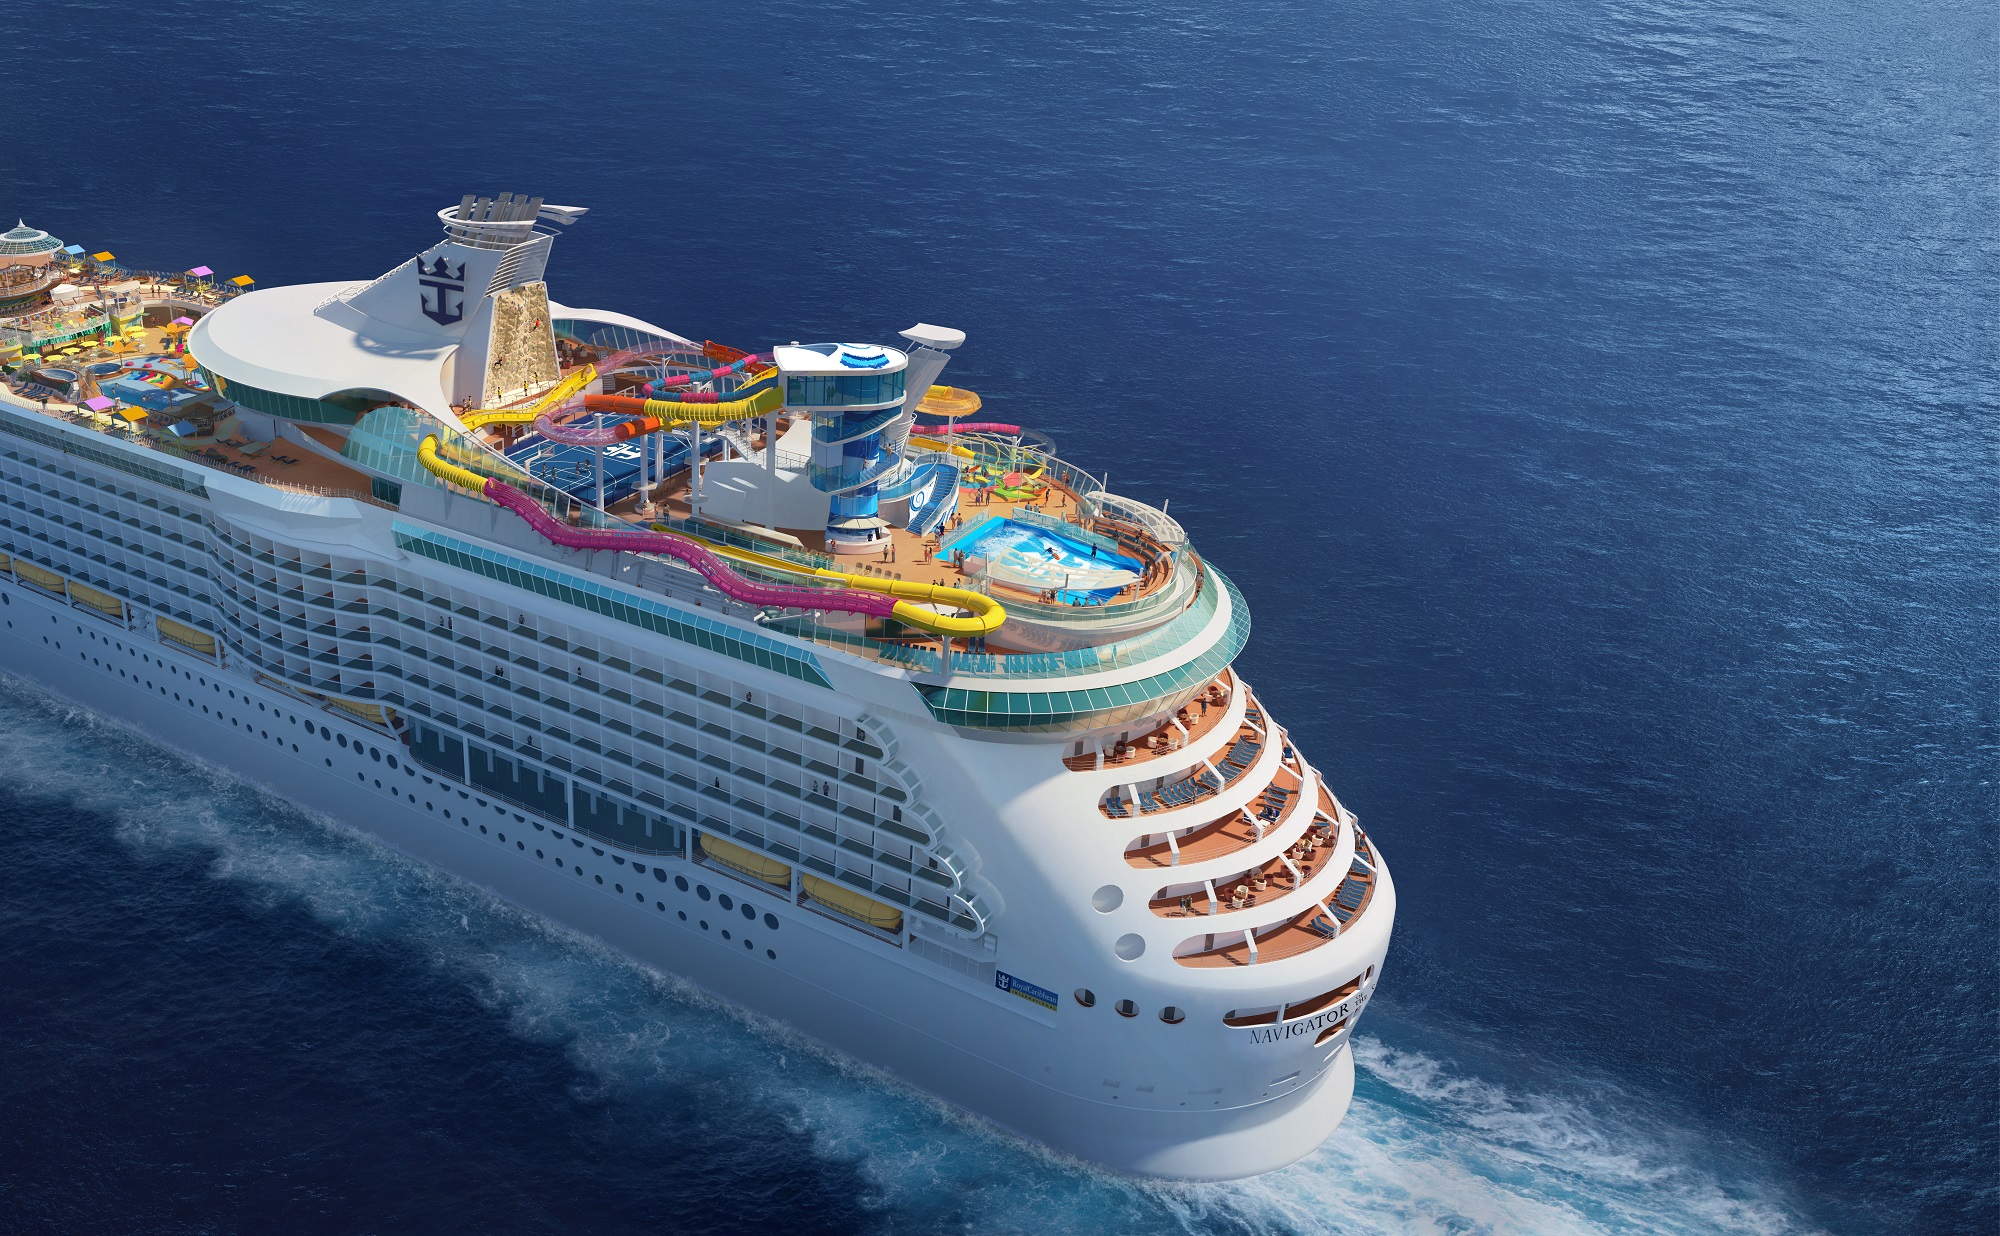 皇家加勒比“海洋领航者号”以全新设施开启超凡度假体验